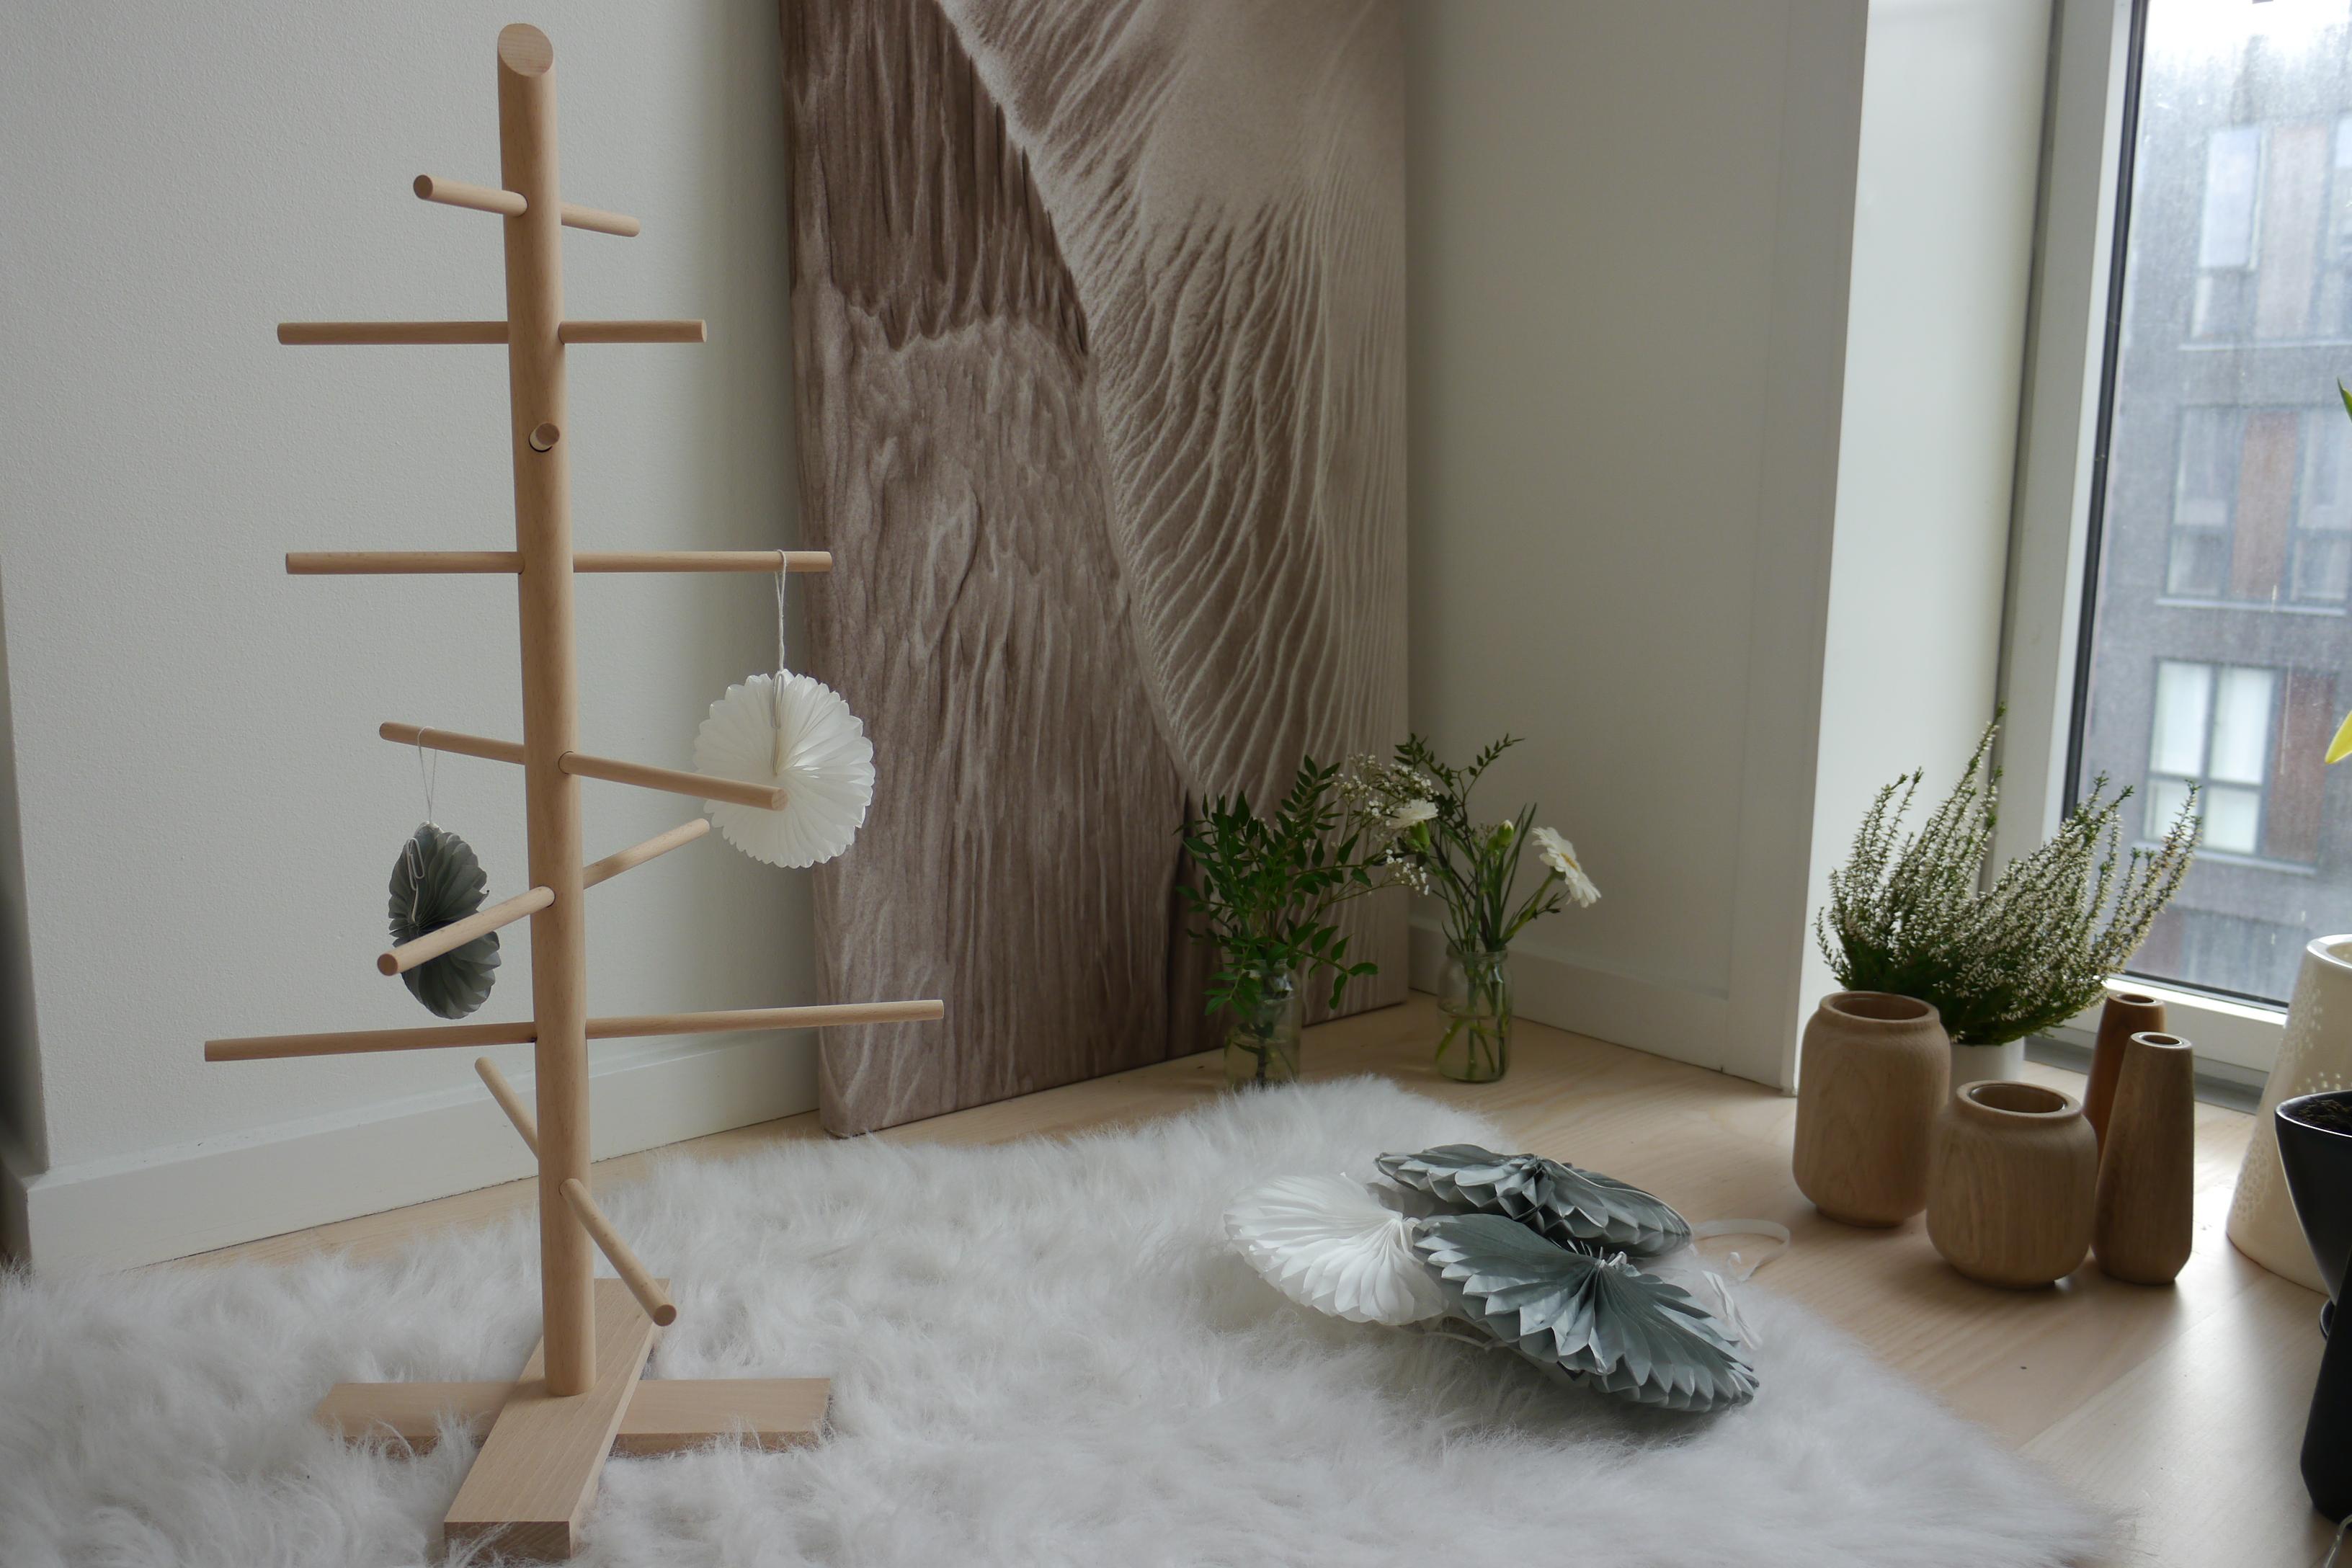 Extravaganter Weihnachtsbaum Filigrantrae von Trine Find #wohnzimmer #skandinavischesdesign ©Trine Find